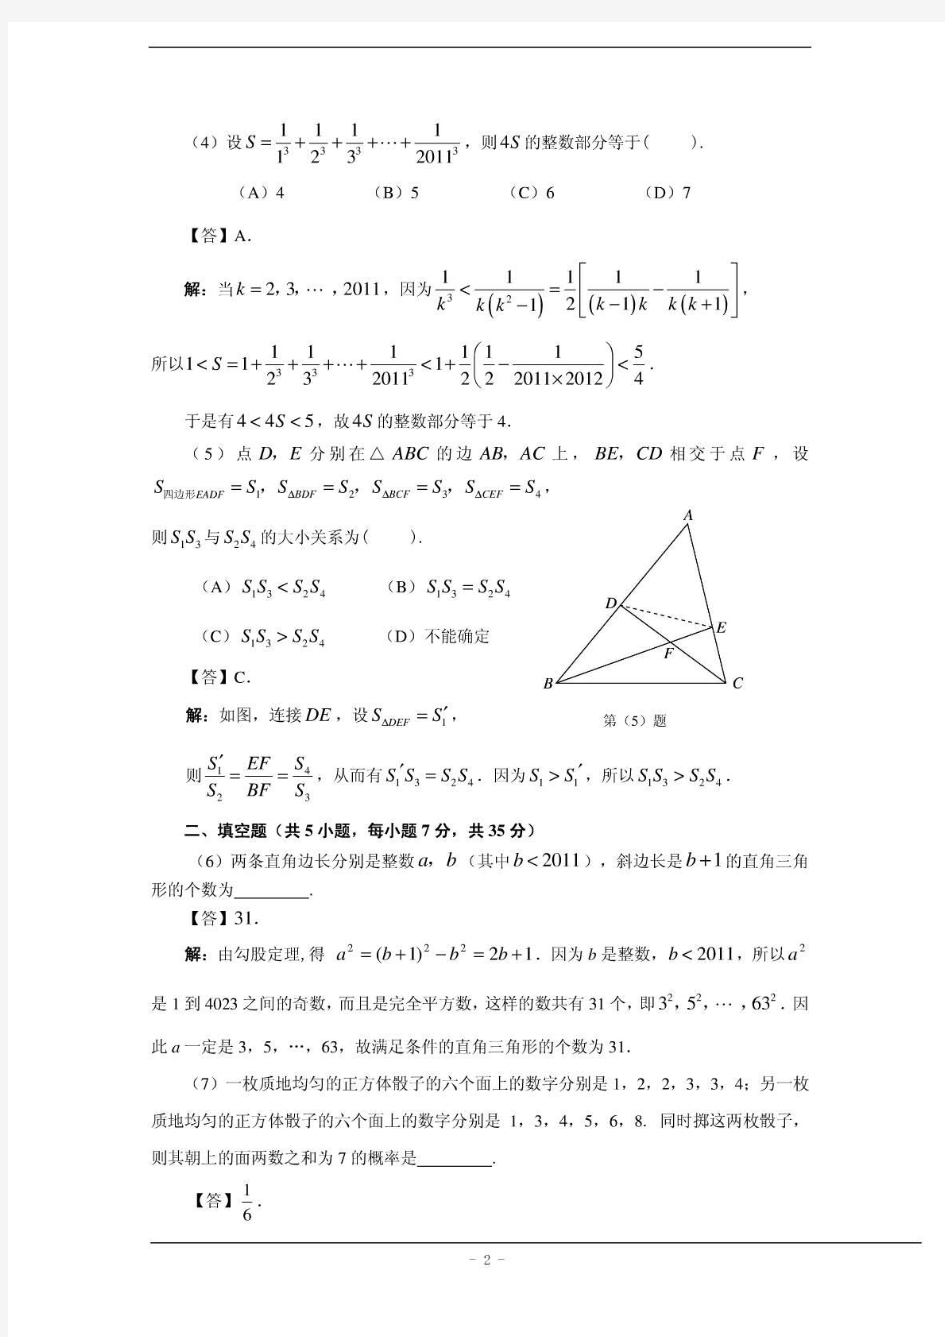 全国初中数学竞赛天津赛区复赛试题(含答案)